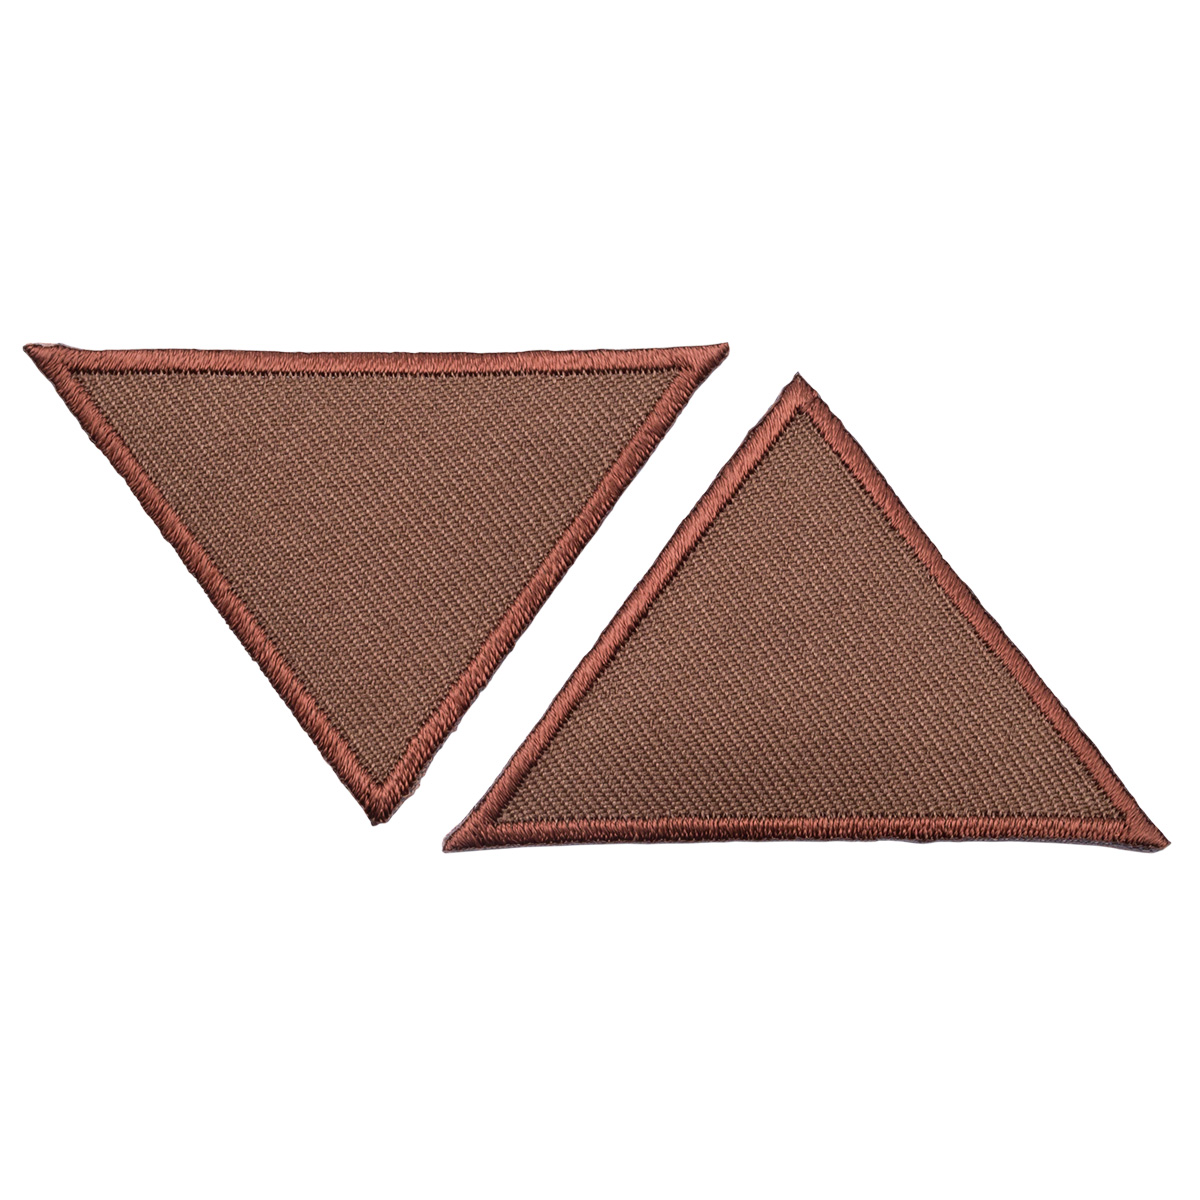 Термоаппликация Prym нашивка Треугольник коричневый 4х6 см 2 шт для ремонта и украшения одежды 925469 - фото 7